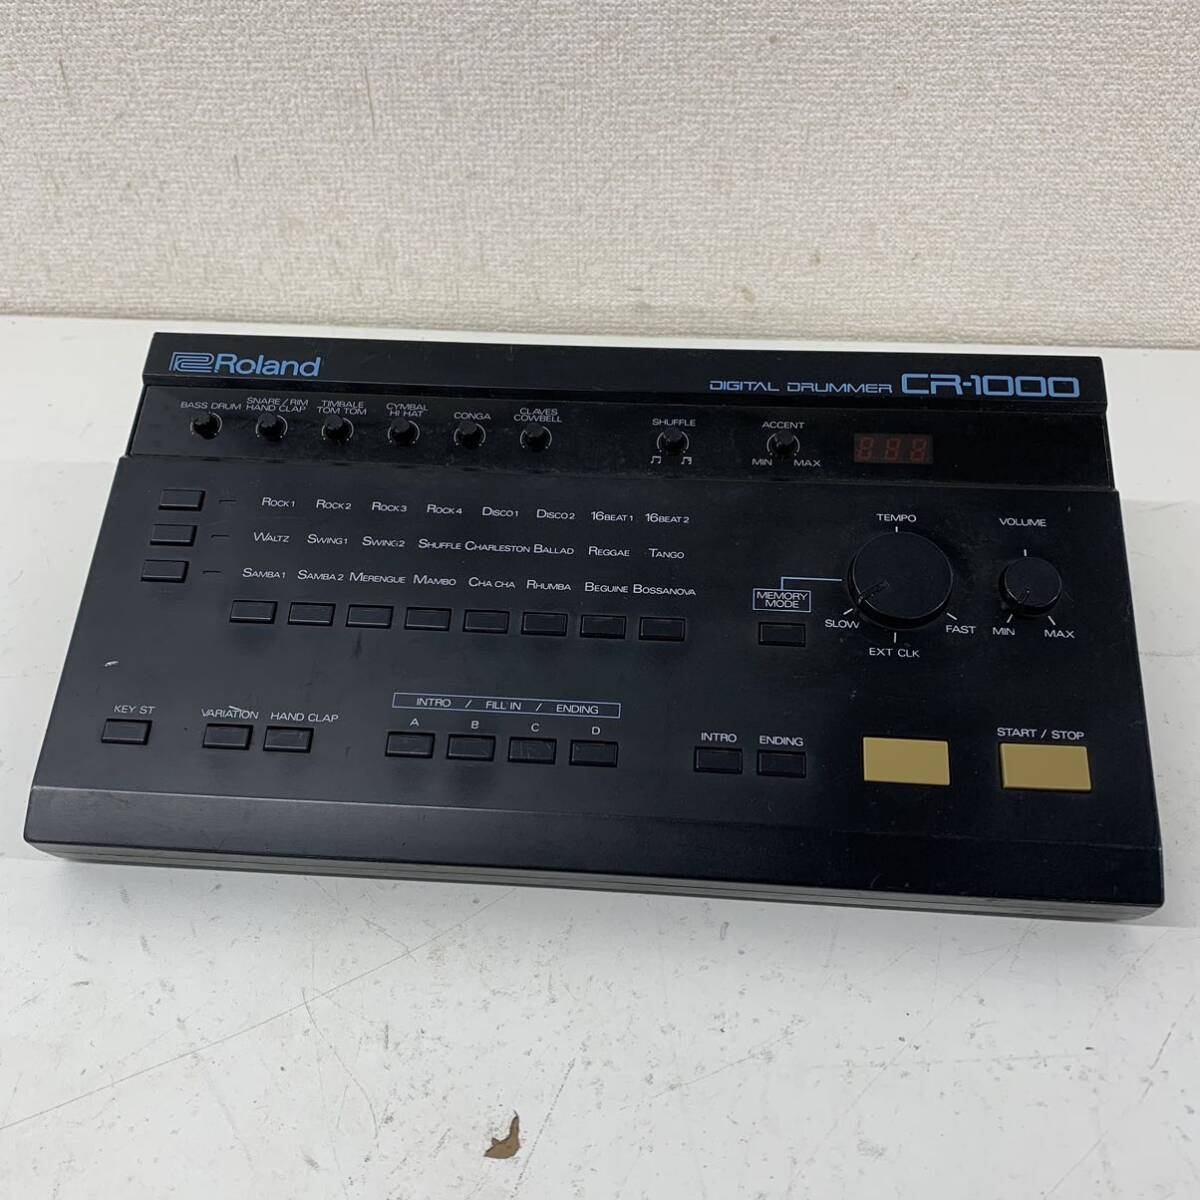 [A-1] Roland CR-1000 rhythm machine Roland digital drama - electrification has confirmed . sound possible 1793-63